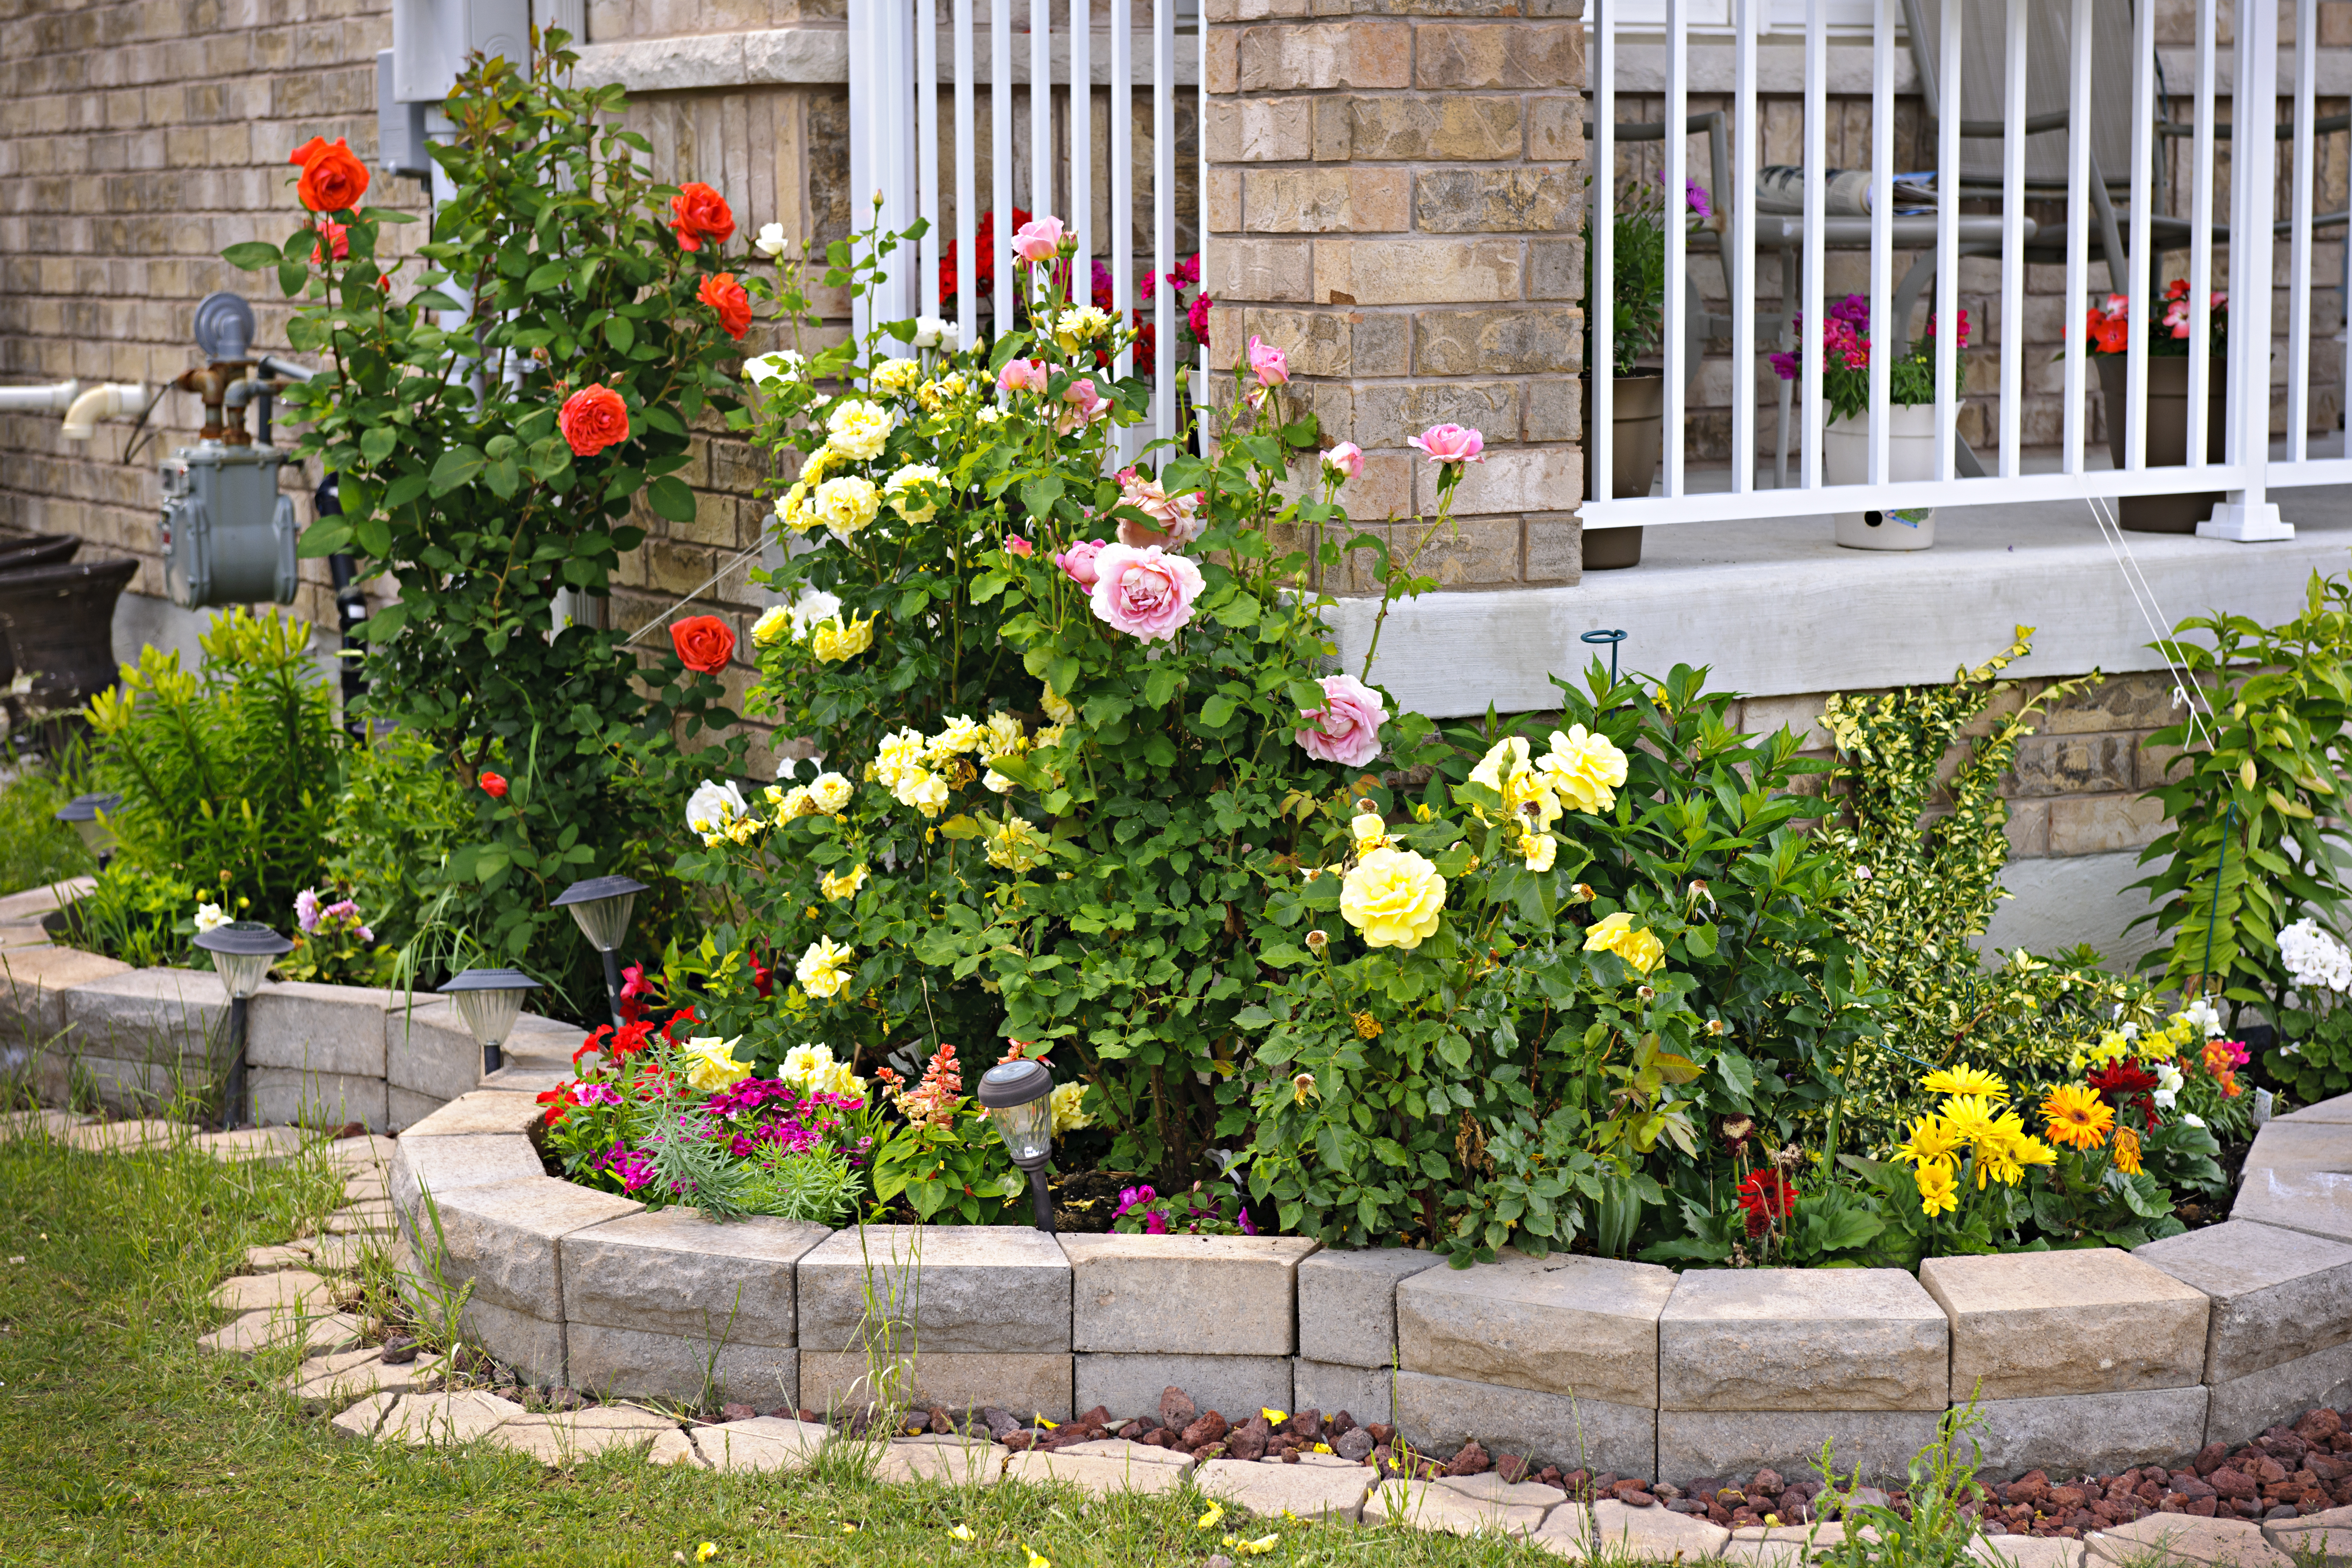 A rose garden | Source: Shutterstock